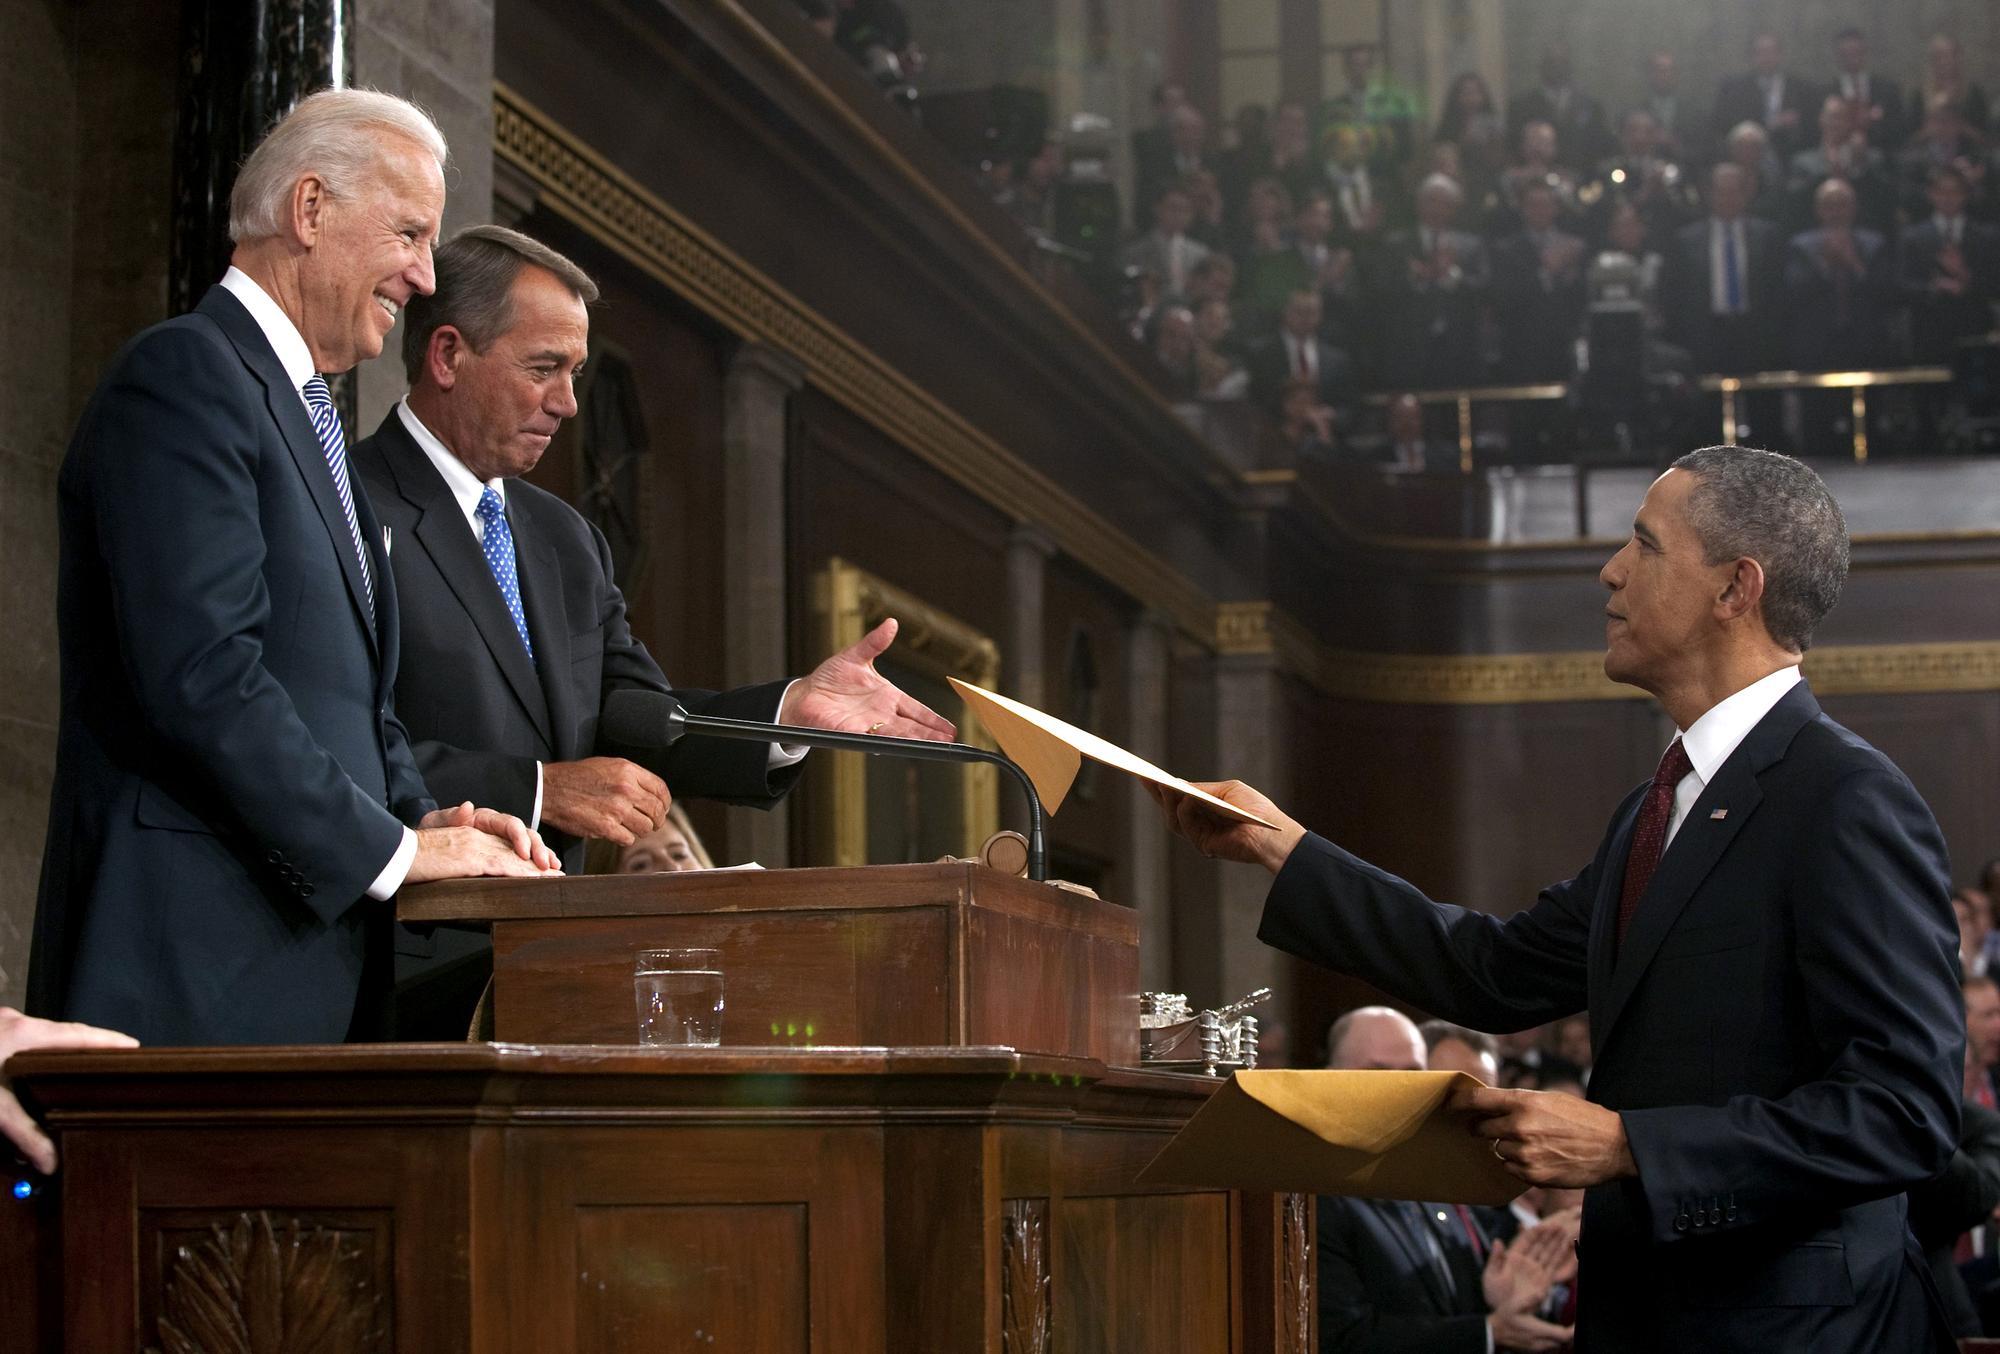 A la fin de son discours, Barack Obama a remis au Vice-président Joe Biden et au président de la Chambre des représentants John Boehner une copie de son discours. [REUTERS - Saul Loeb]